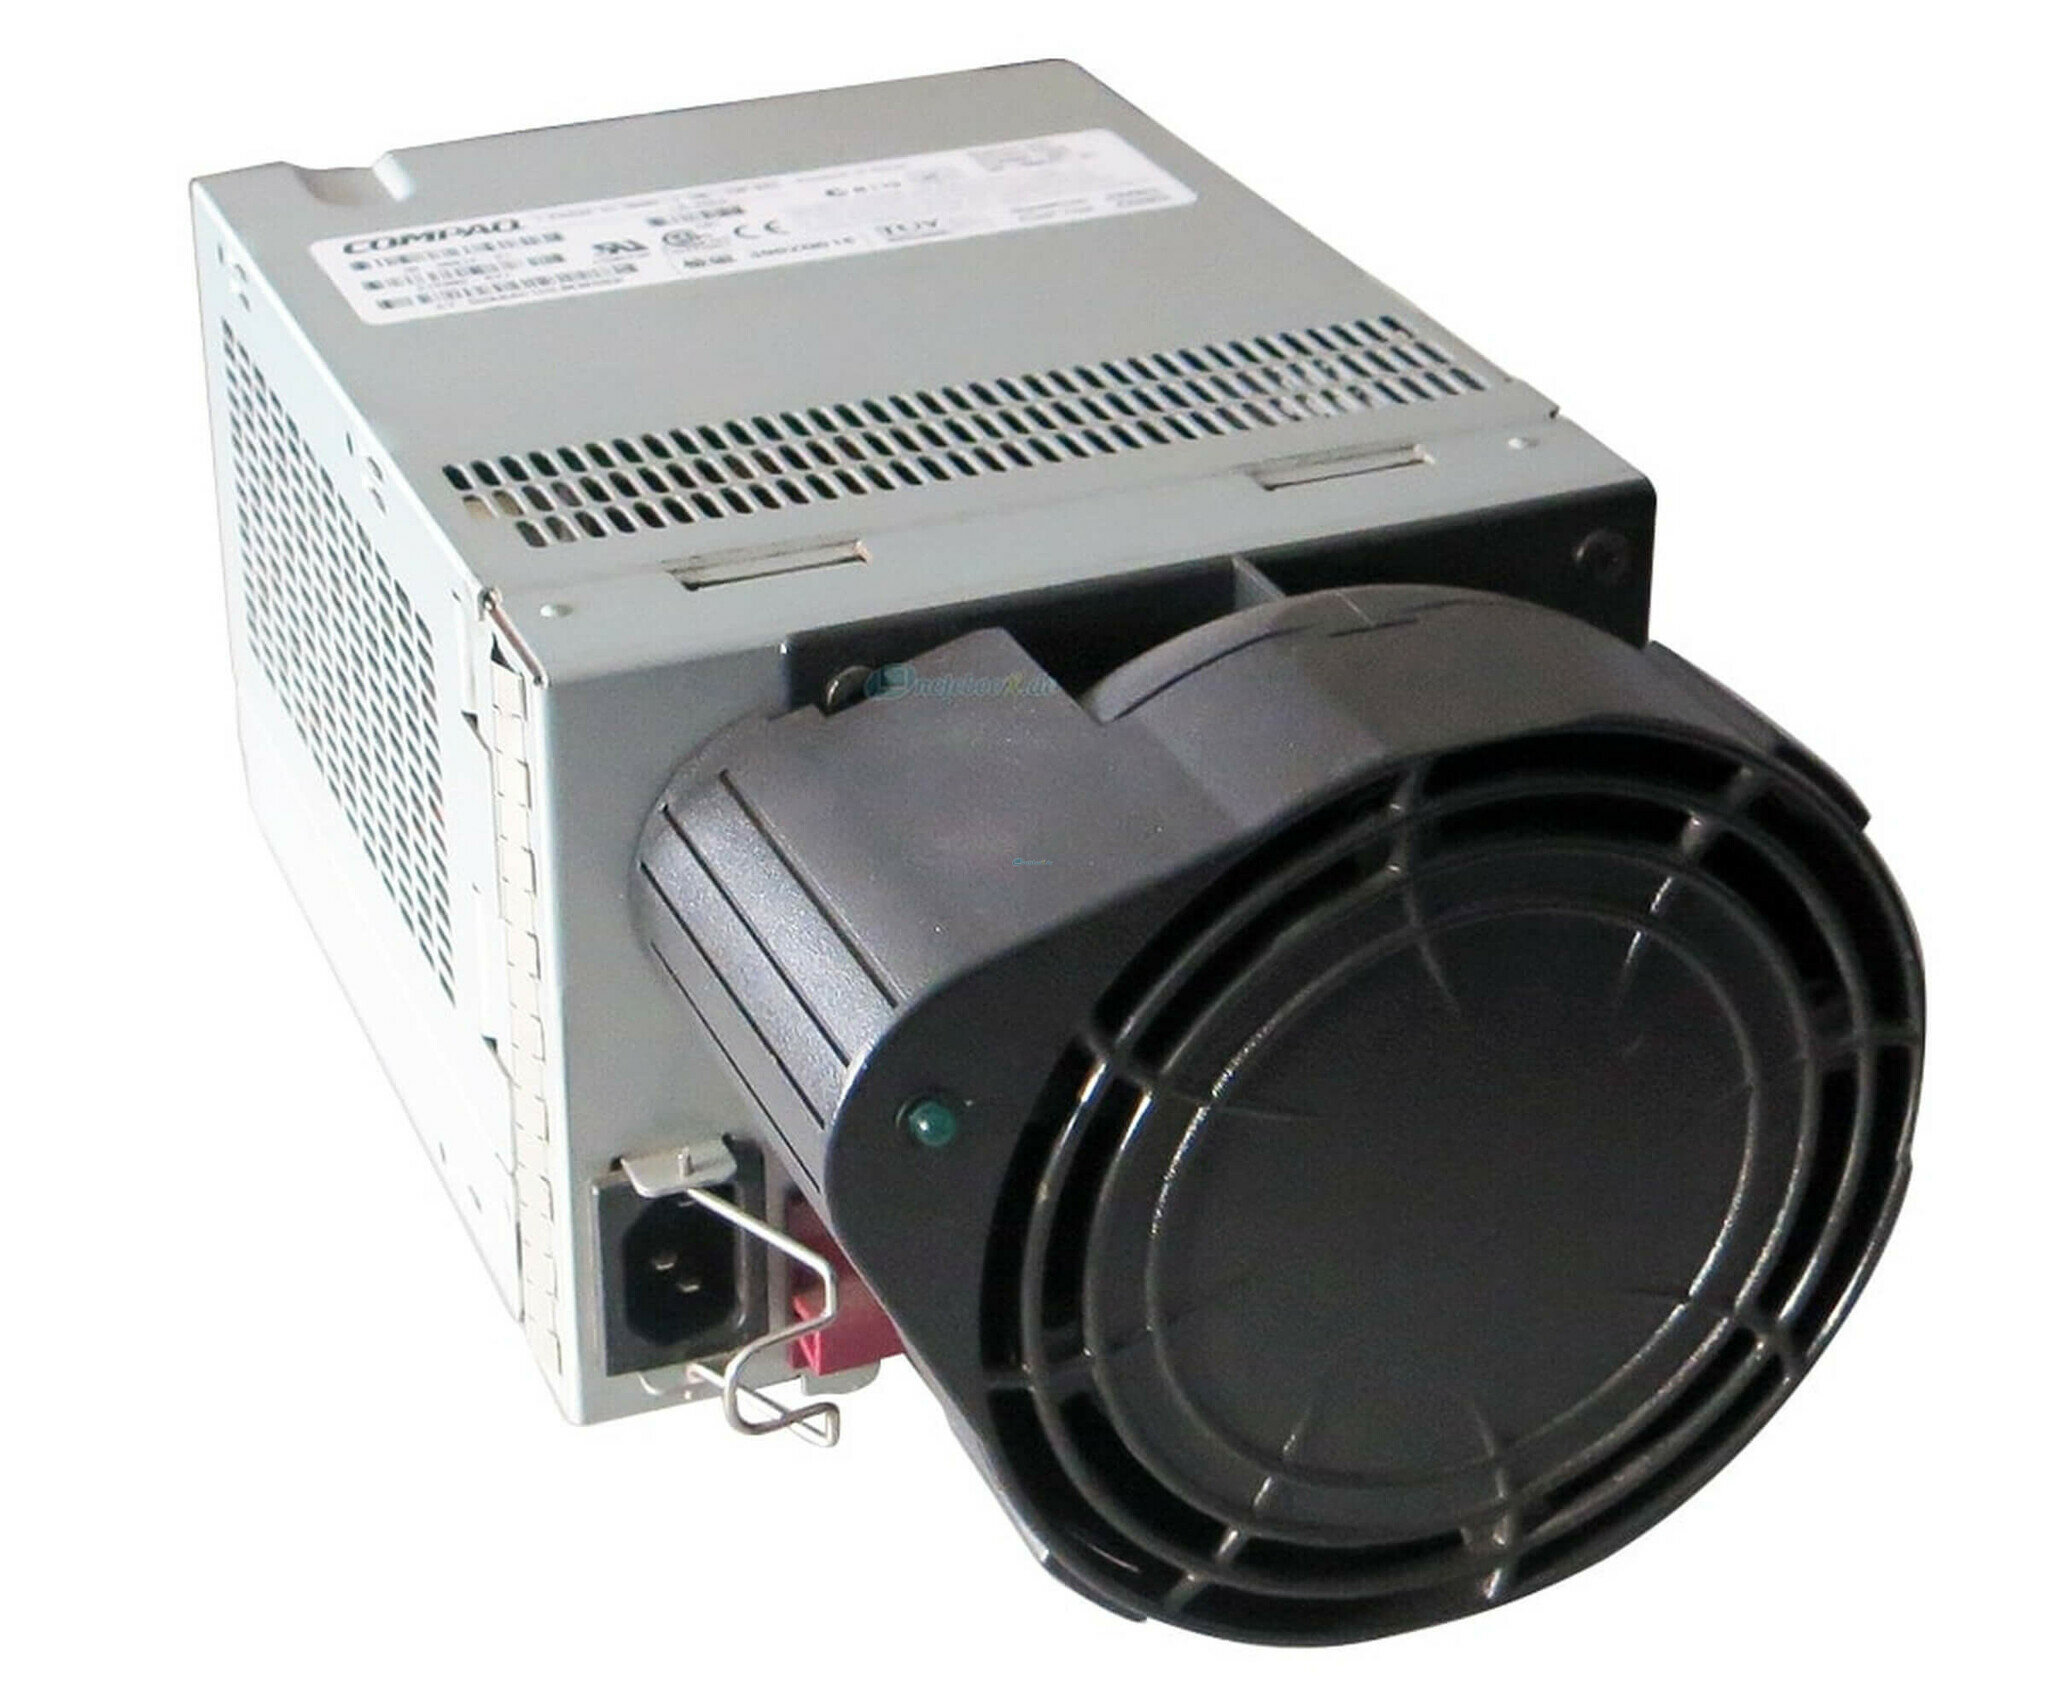 Блок питания HP 30-50872-02 для MSA30 Power Supply FAN+BLOWER